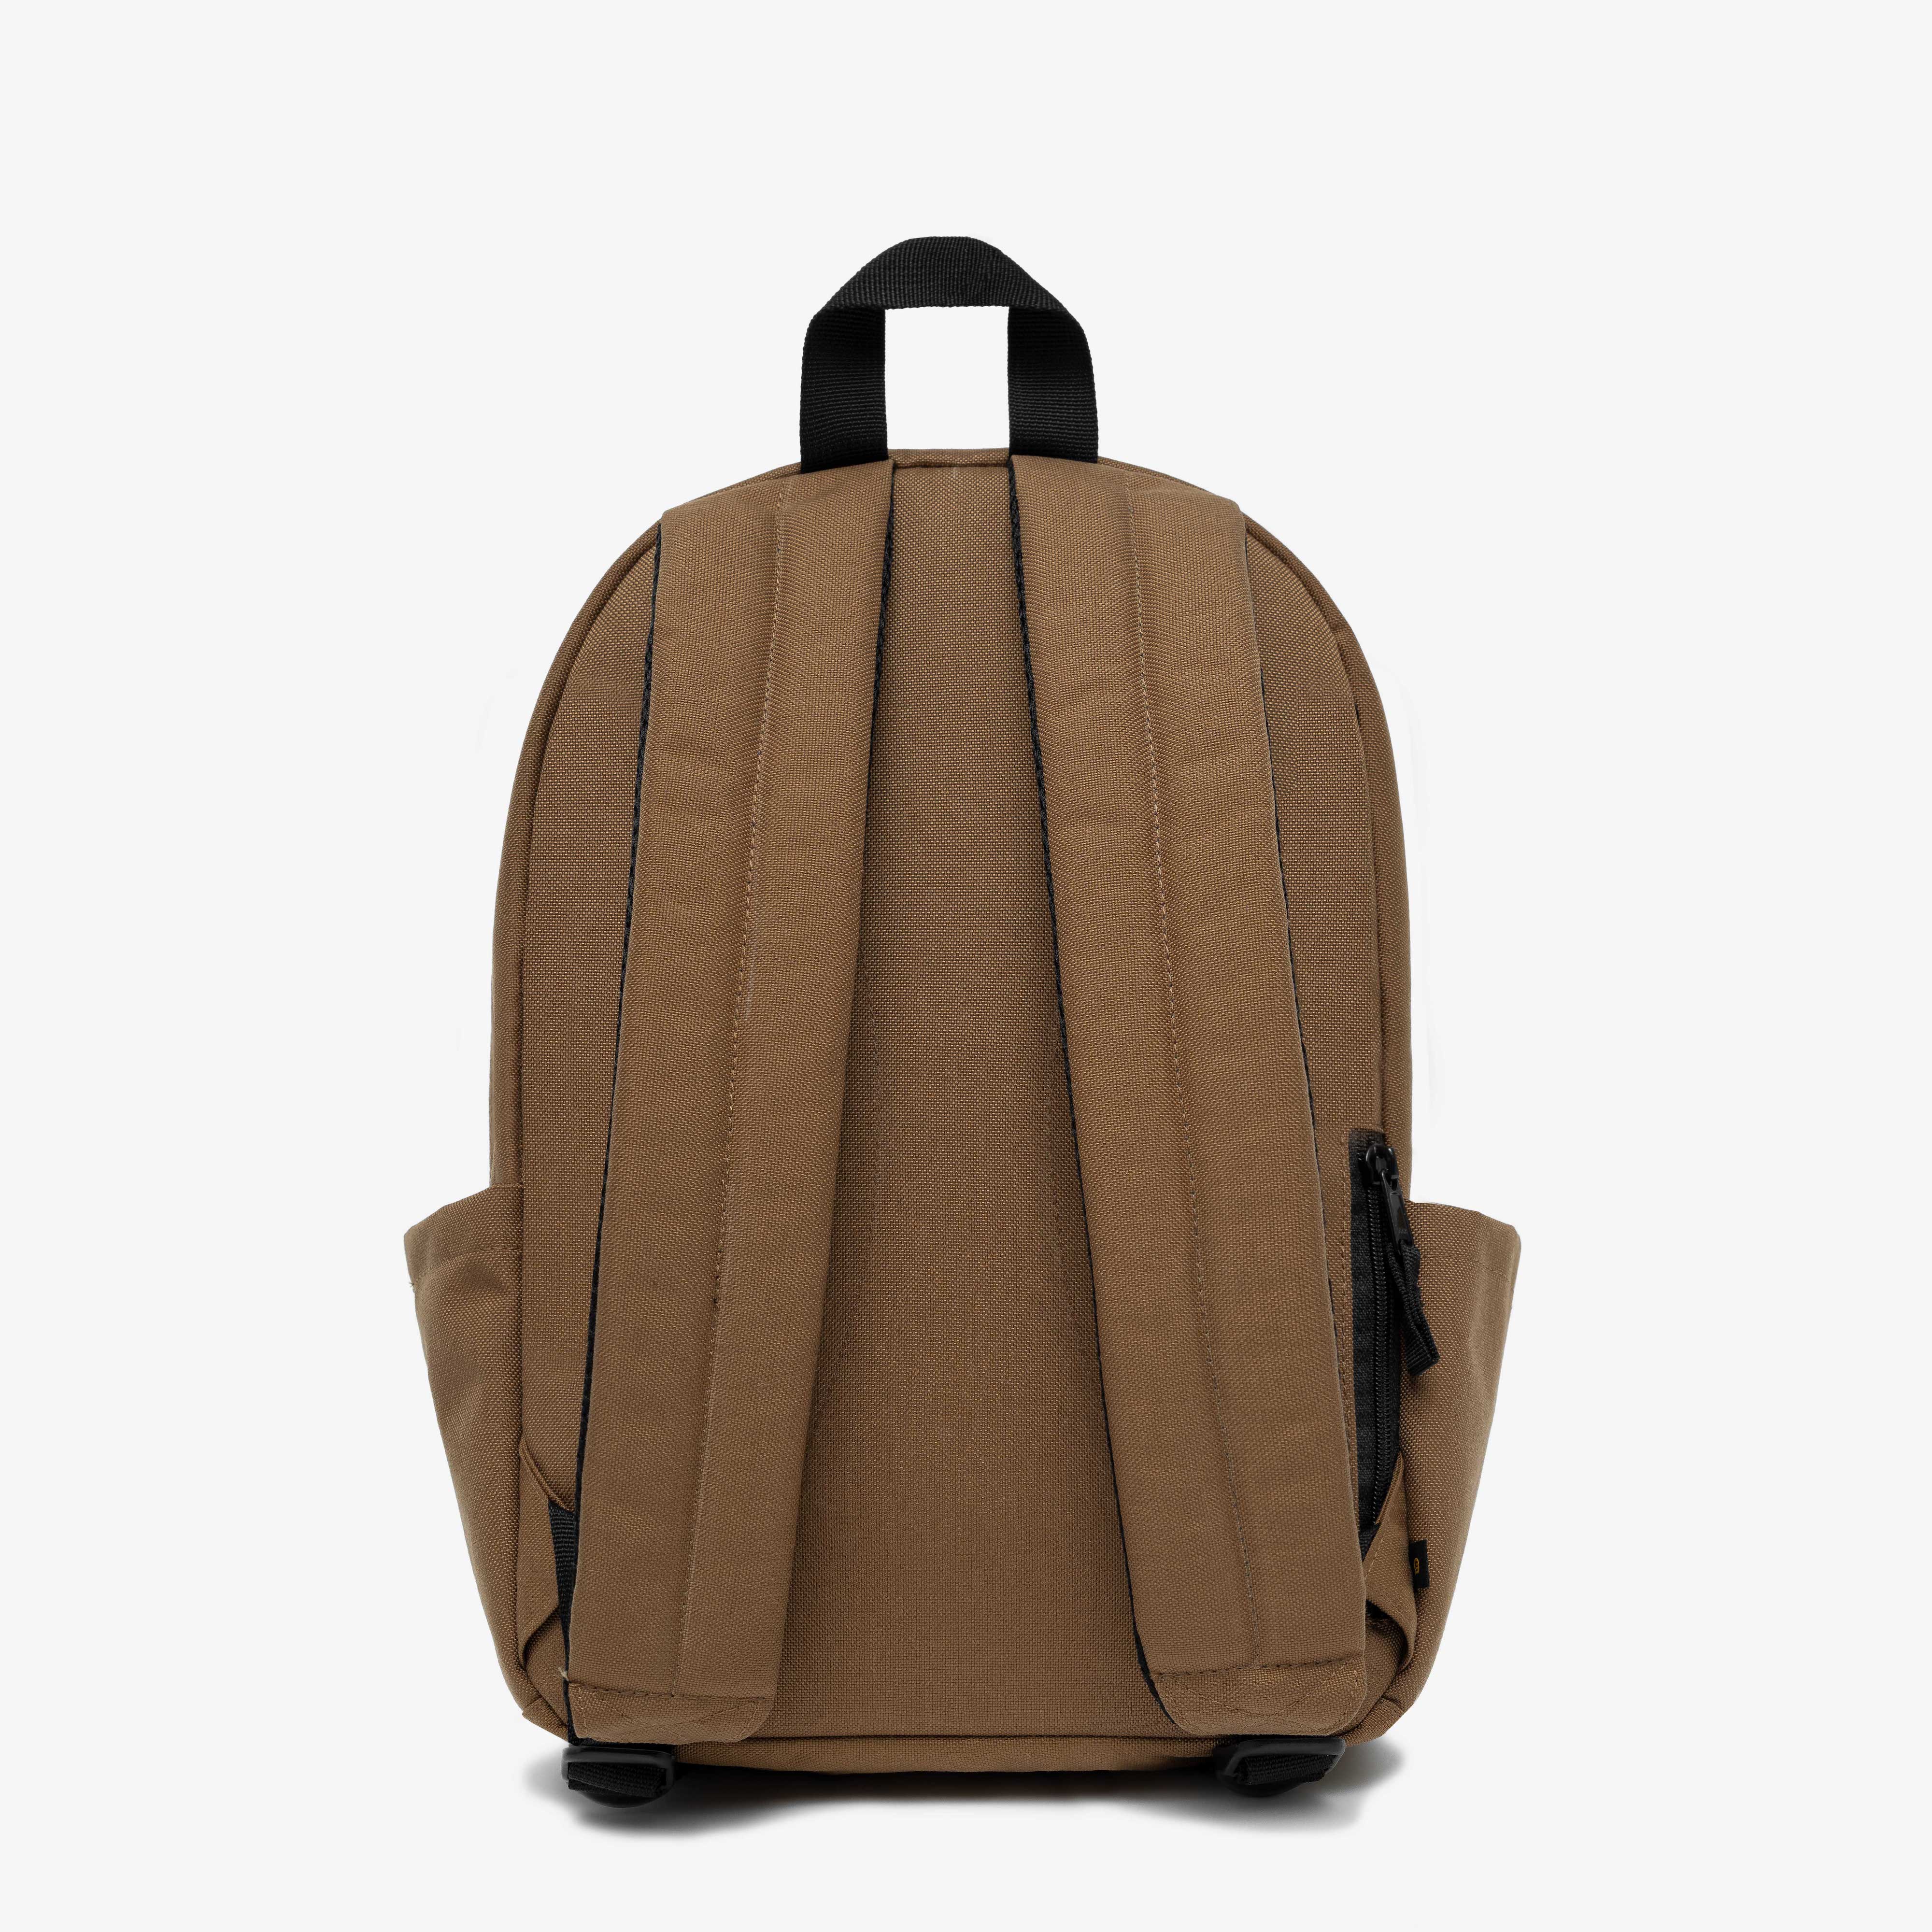 balo dim katie backpack chất liệu chống thấm nước - 3 màu 8